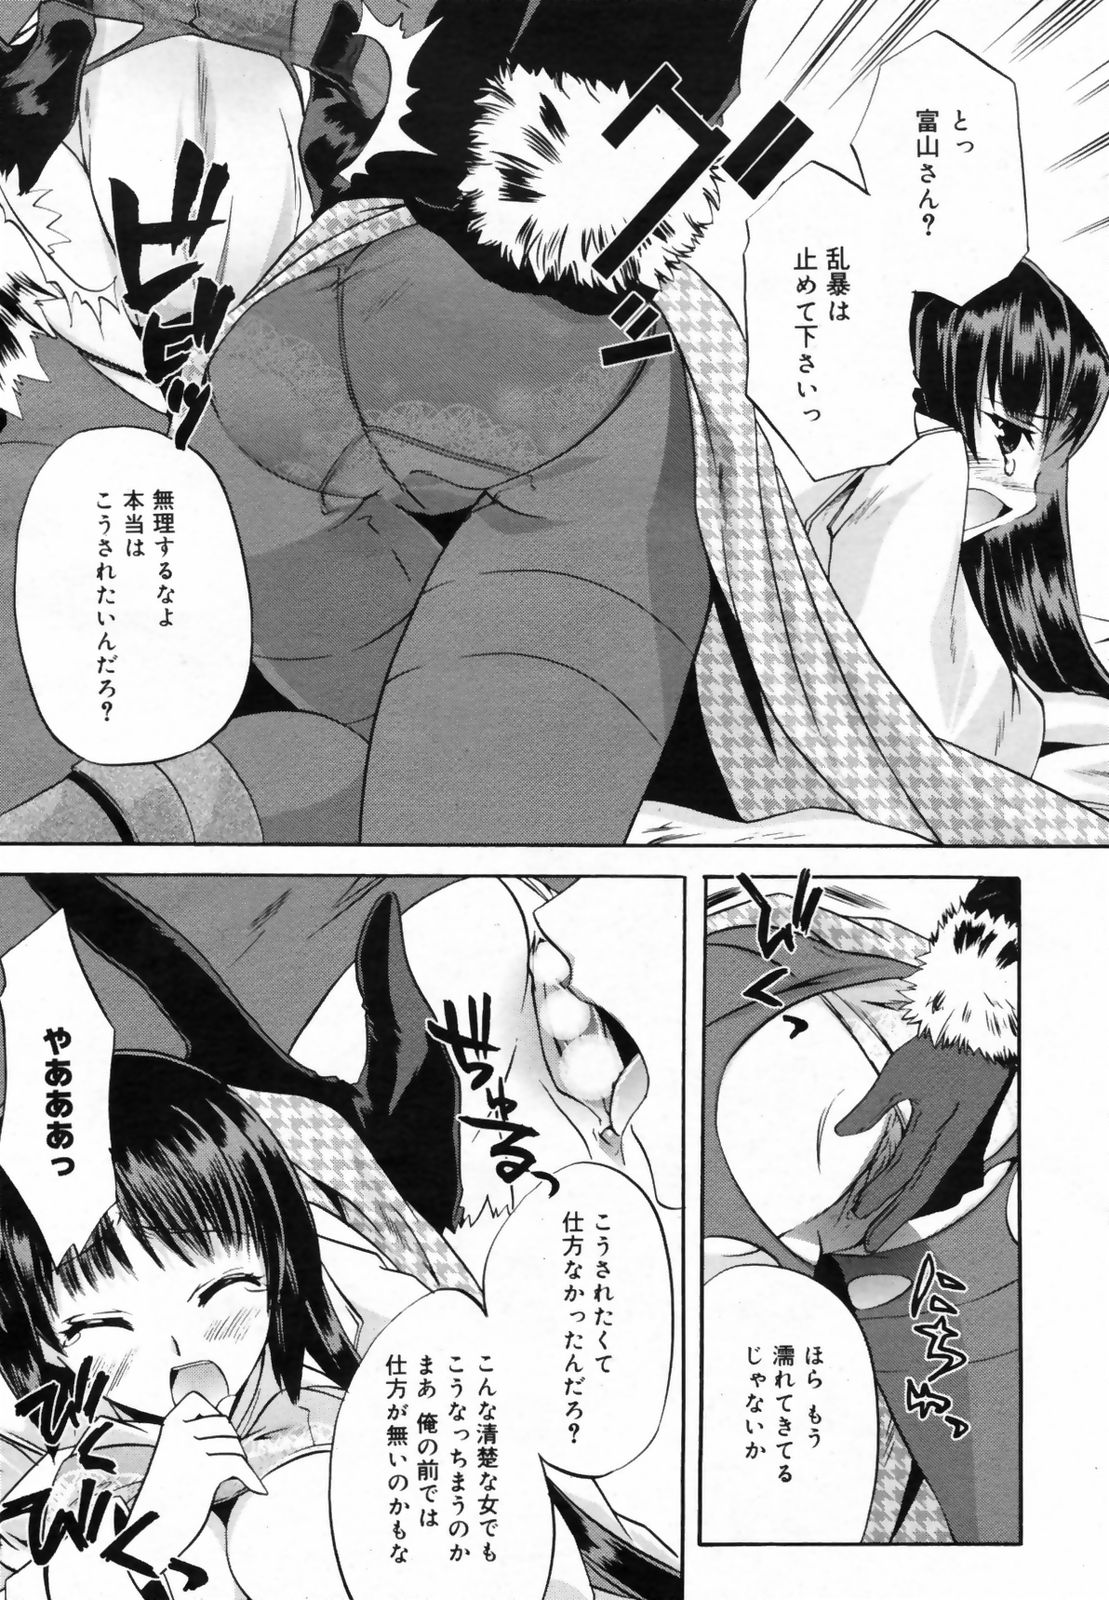 Manga Bangaichi 2009-02 Vol. 234 page 47 full